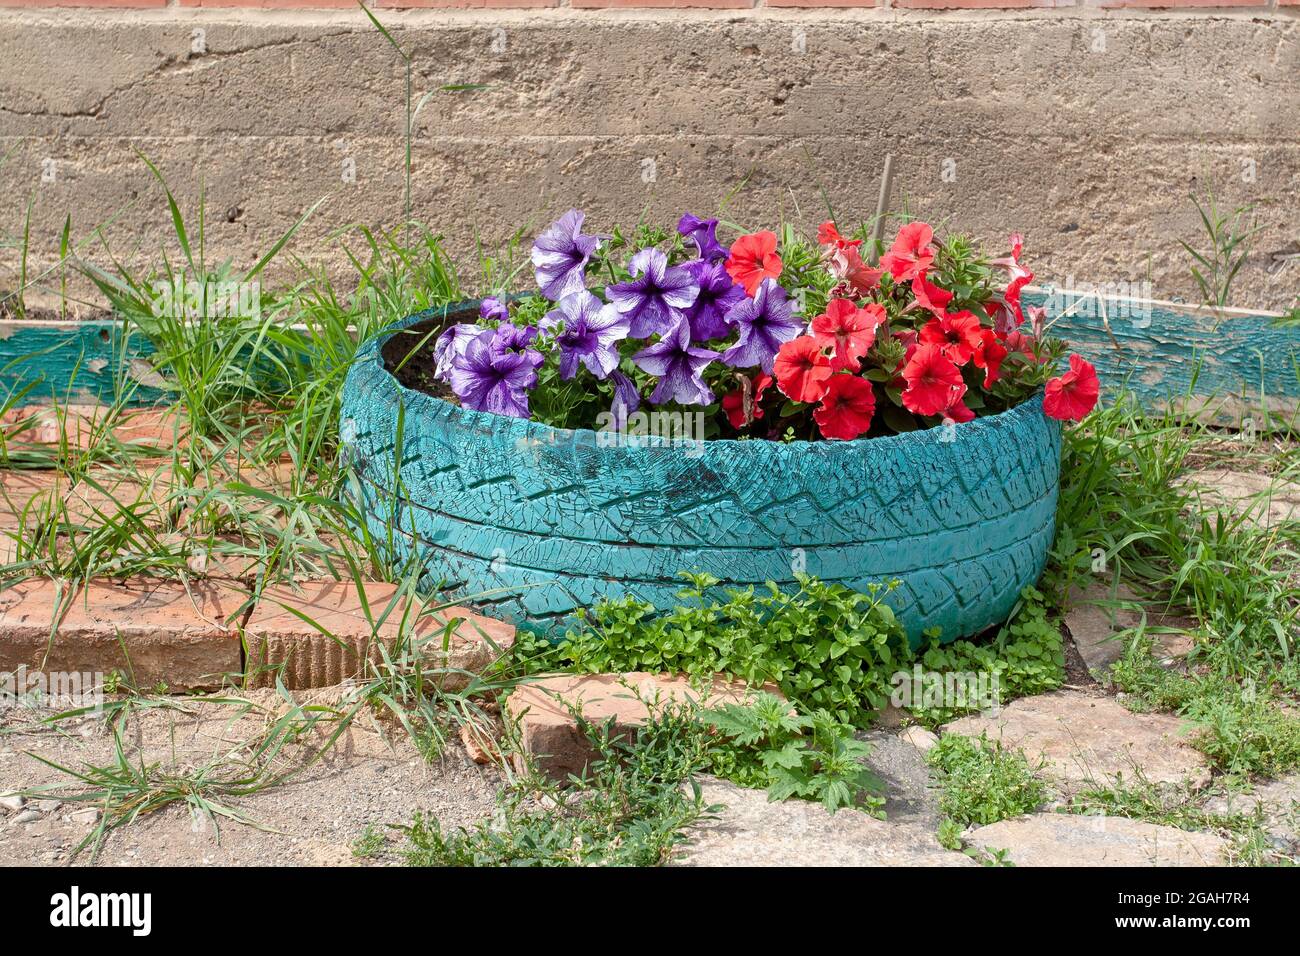 Cama de flores Petunia hecha en un viejo neumático de coche. Imagen horizontal. Foto de stock